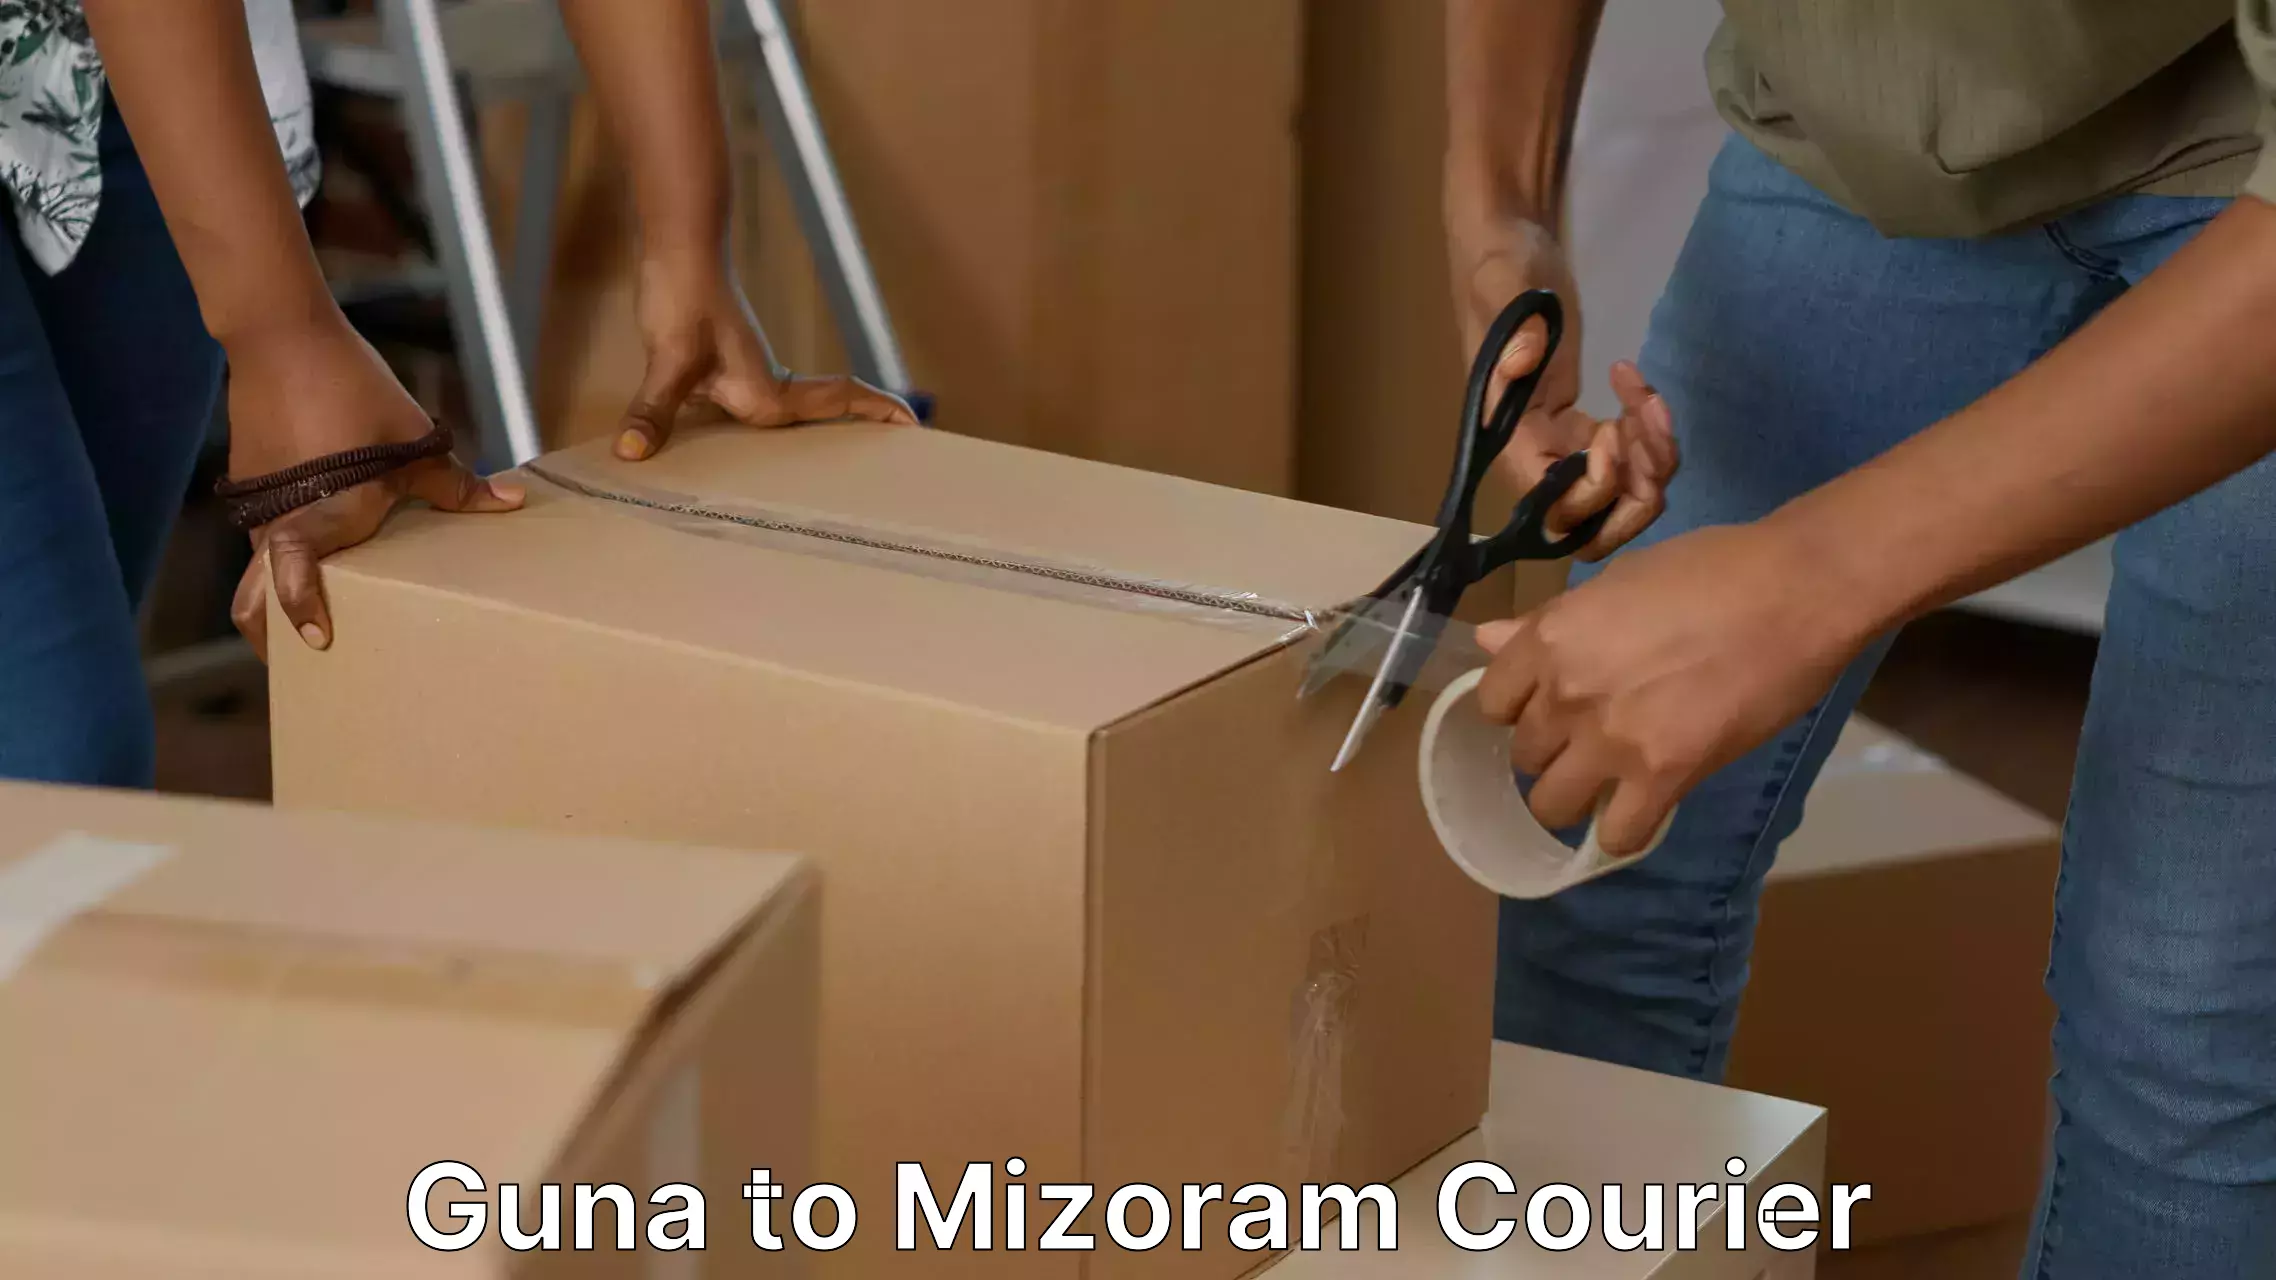 Specialized moving company Guna to Mizoram